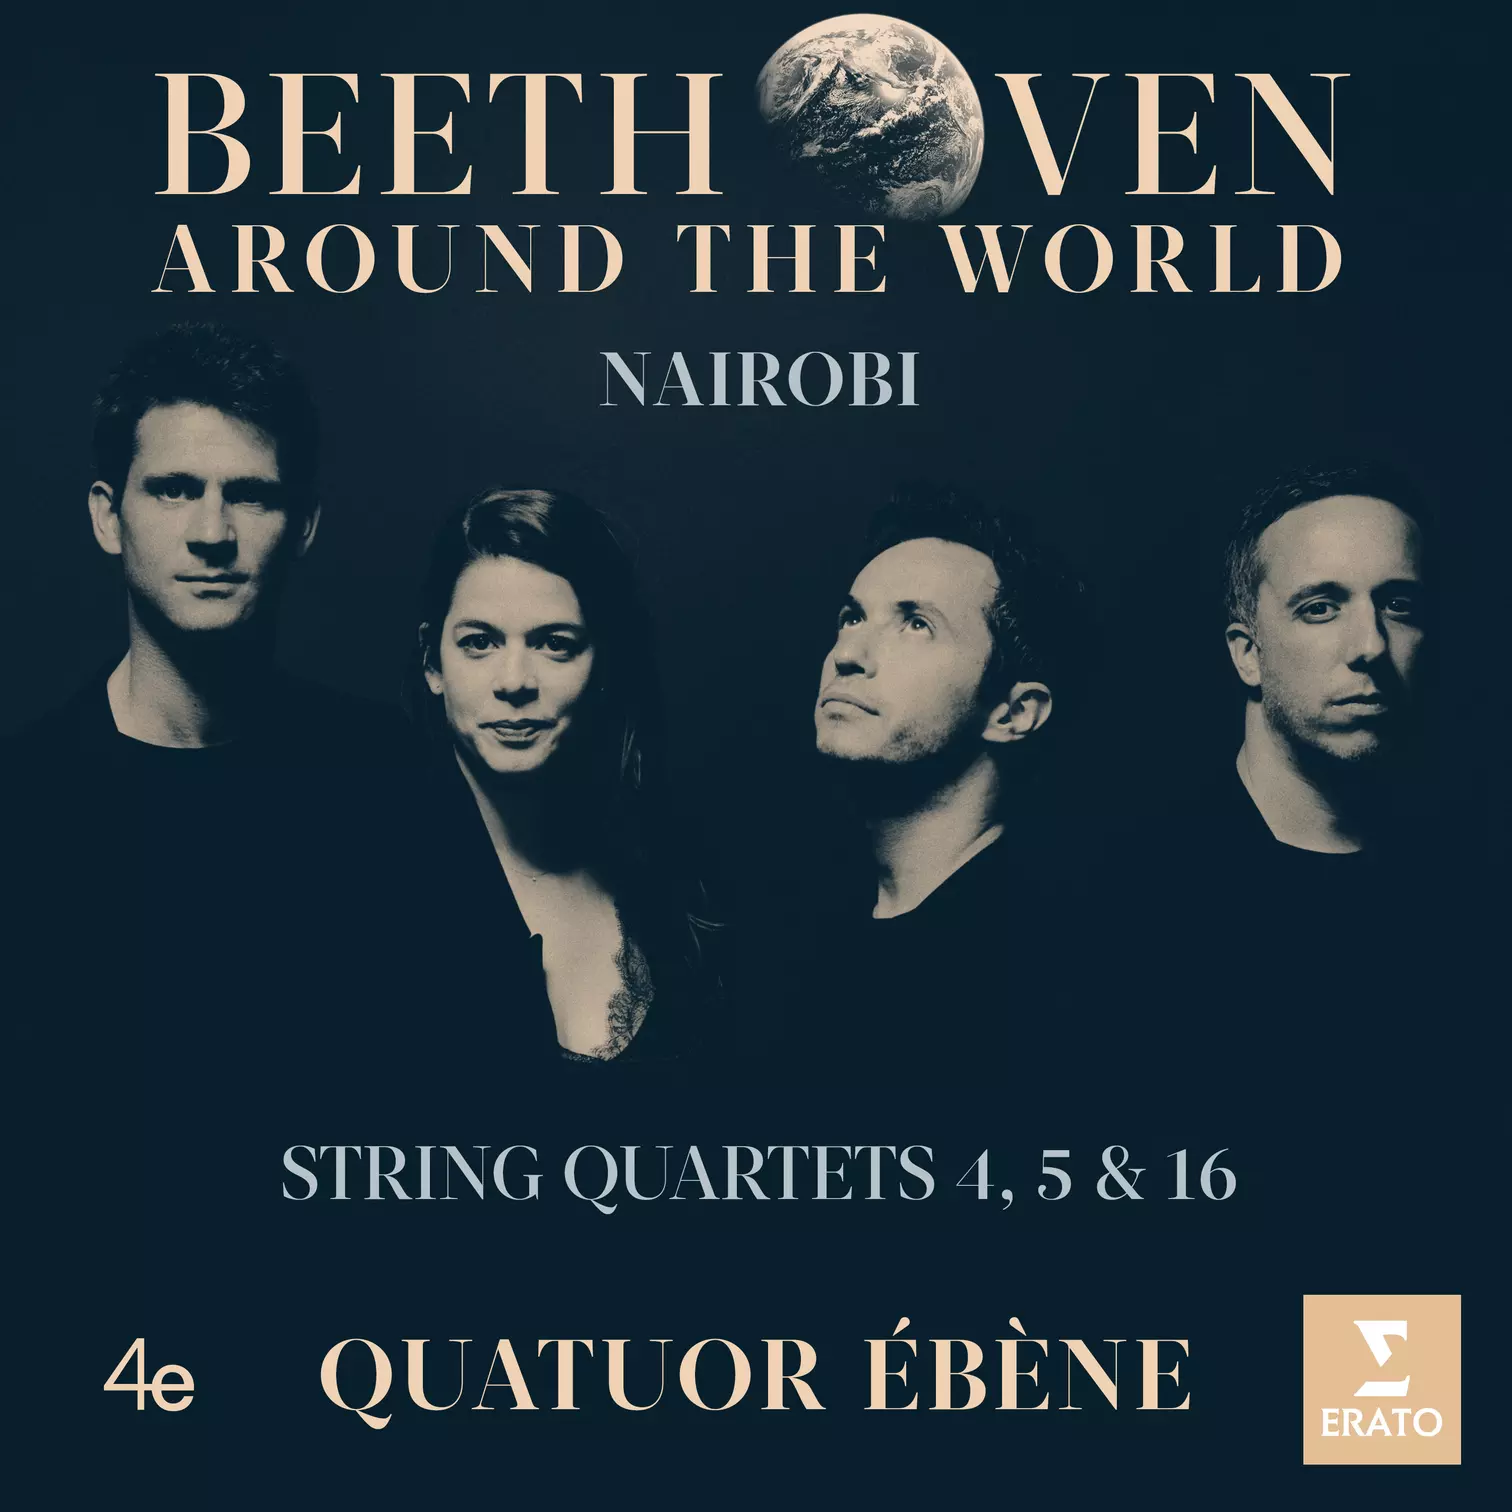 Beethoven Around the World - Nairobi - String Quartets 4, 5 & 16